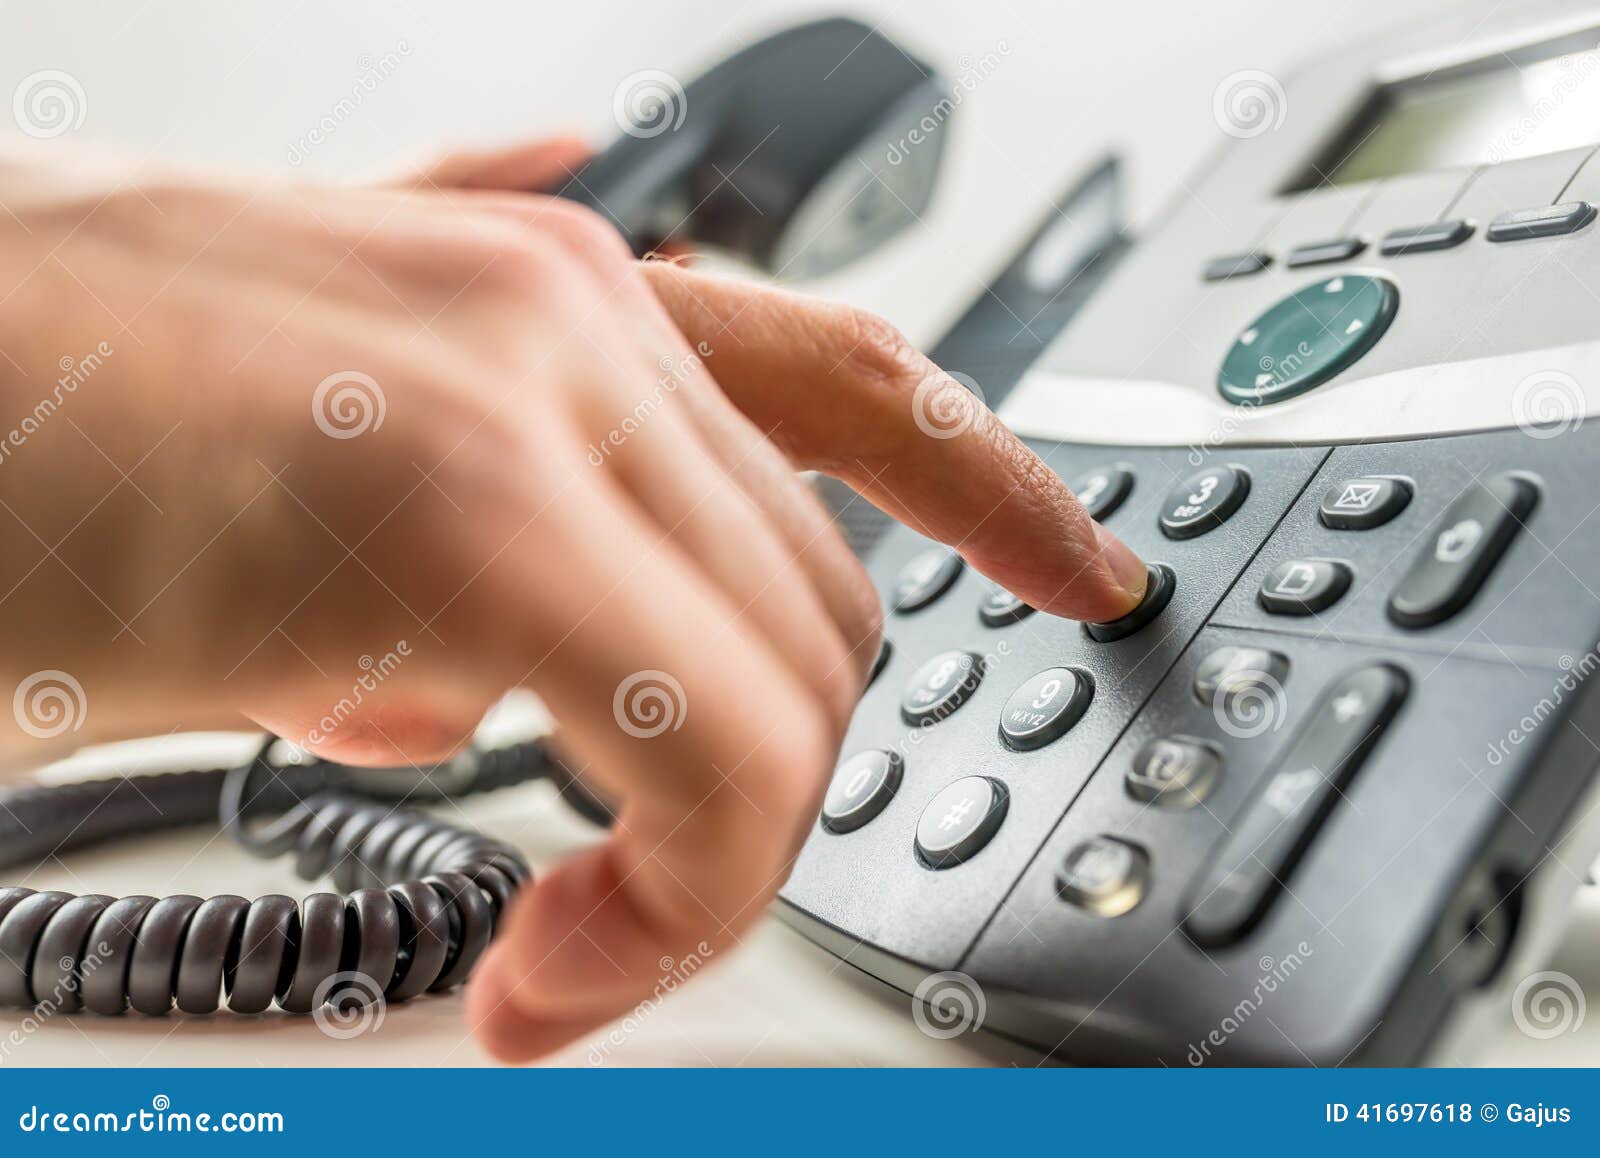 making a phone call